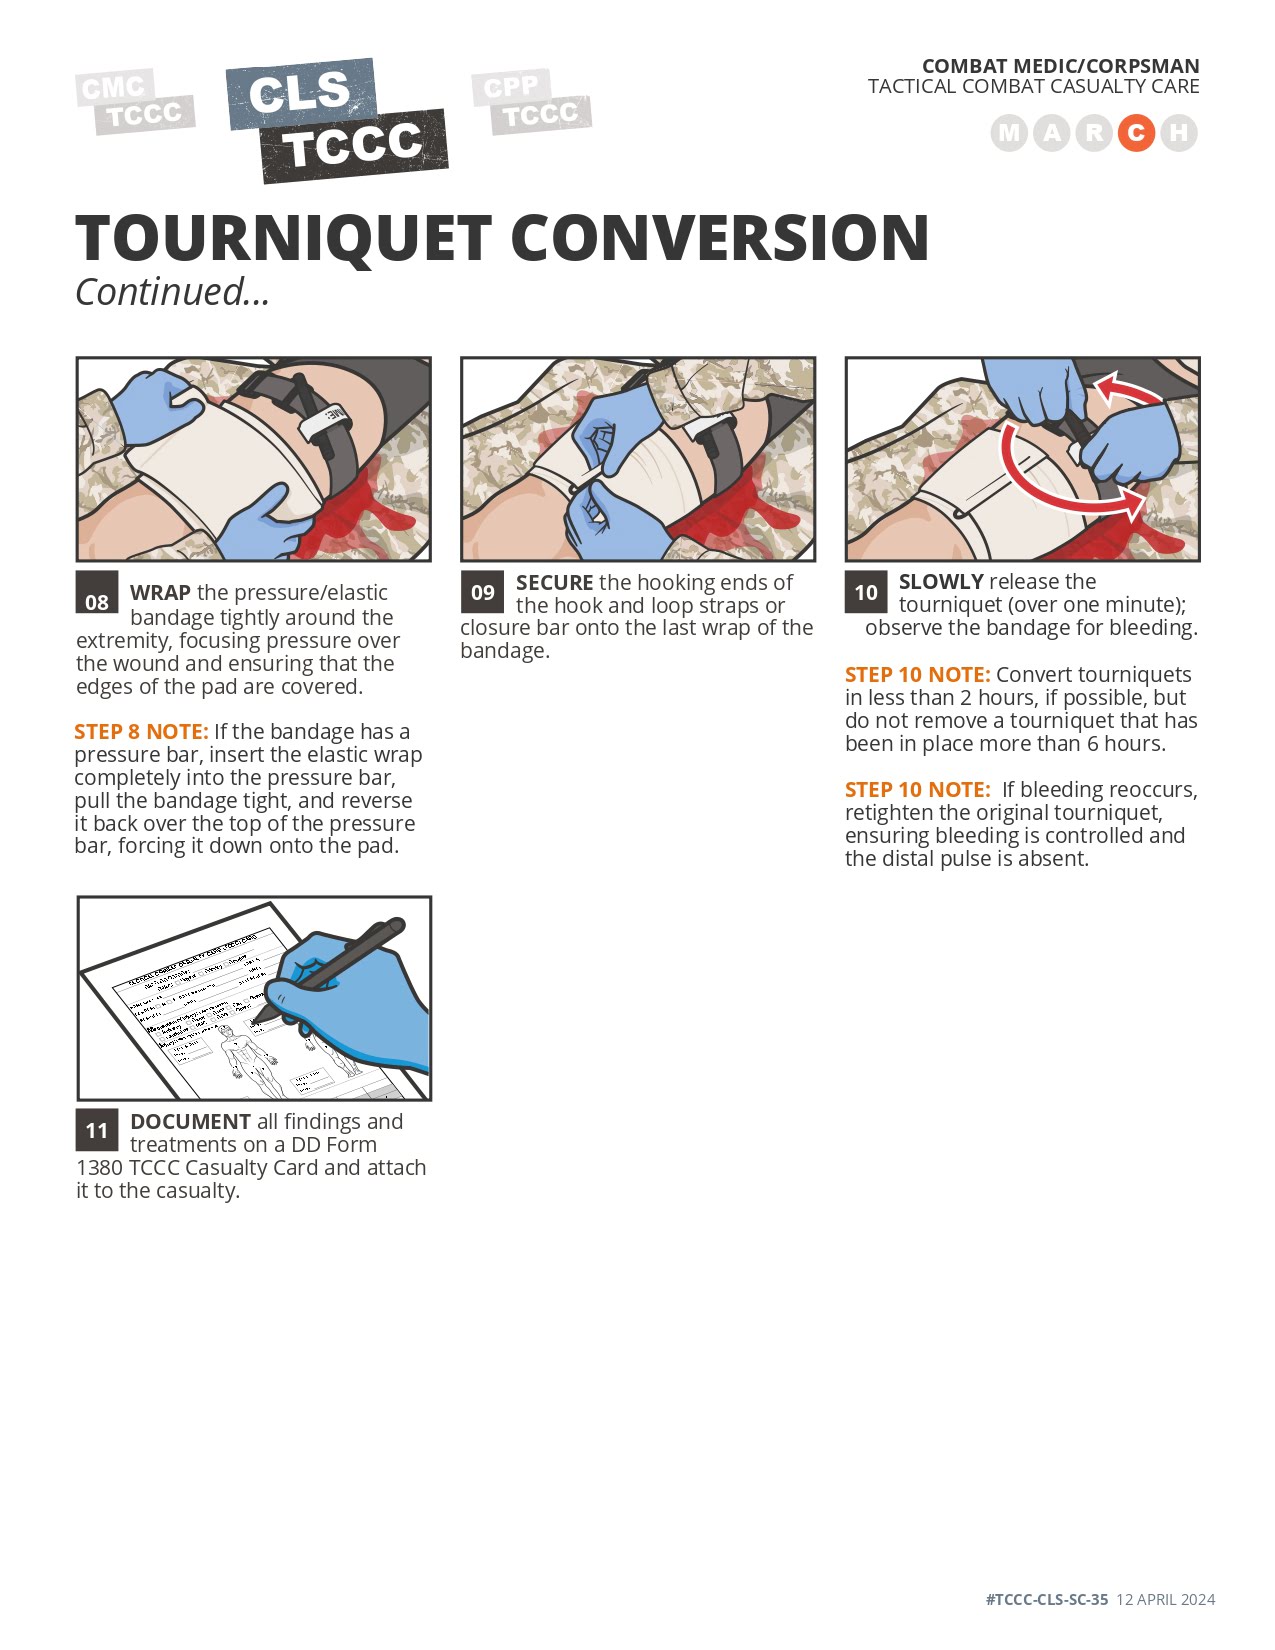 Tourniquet Conversion, page 2